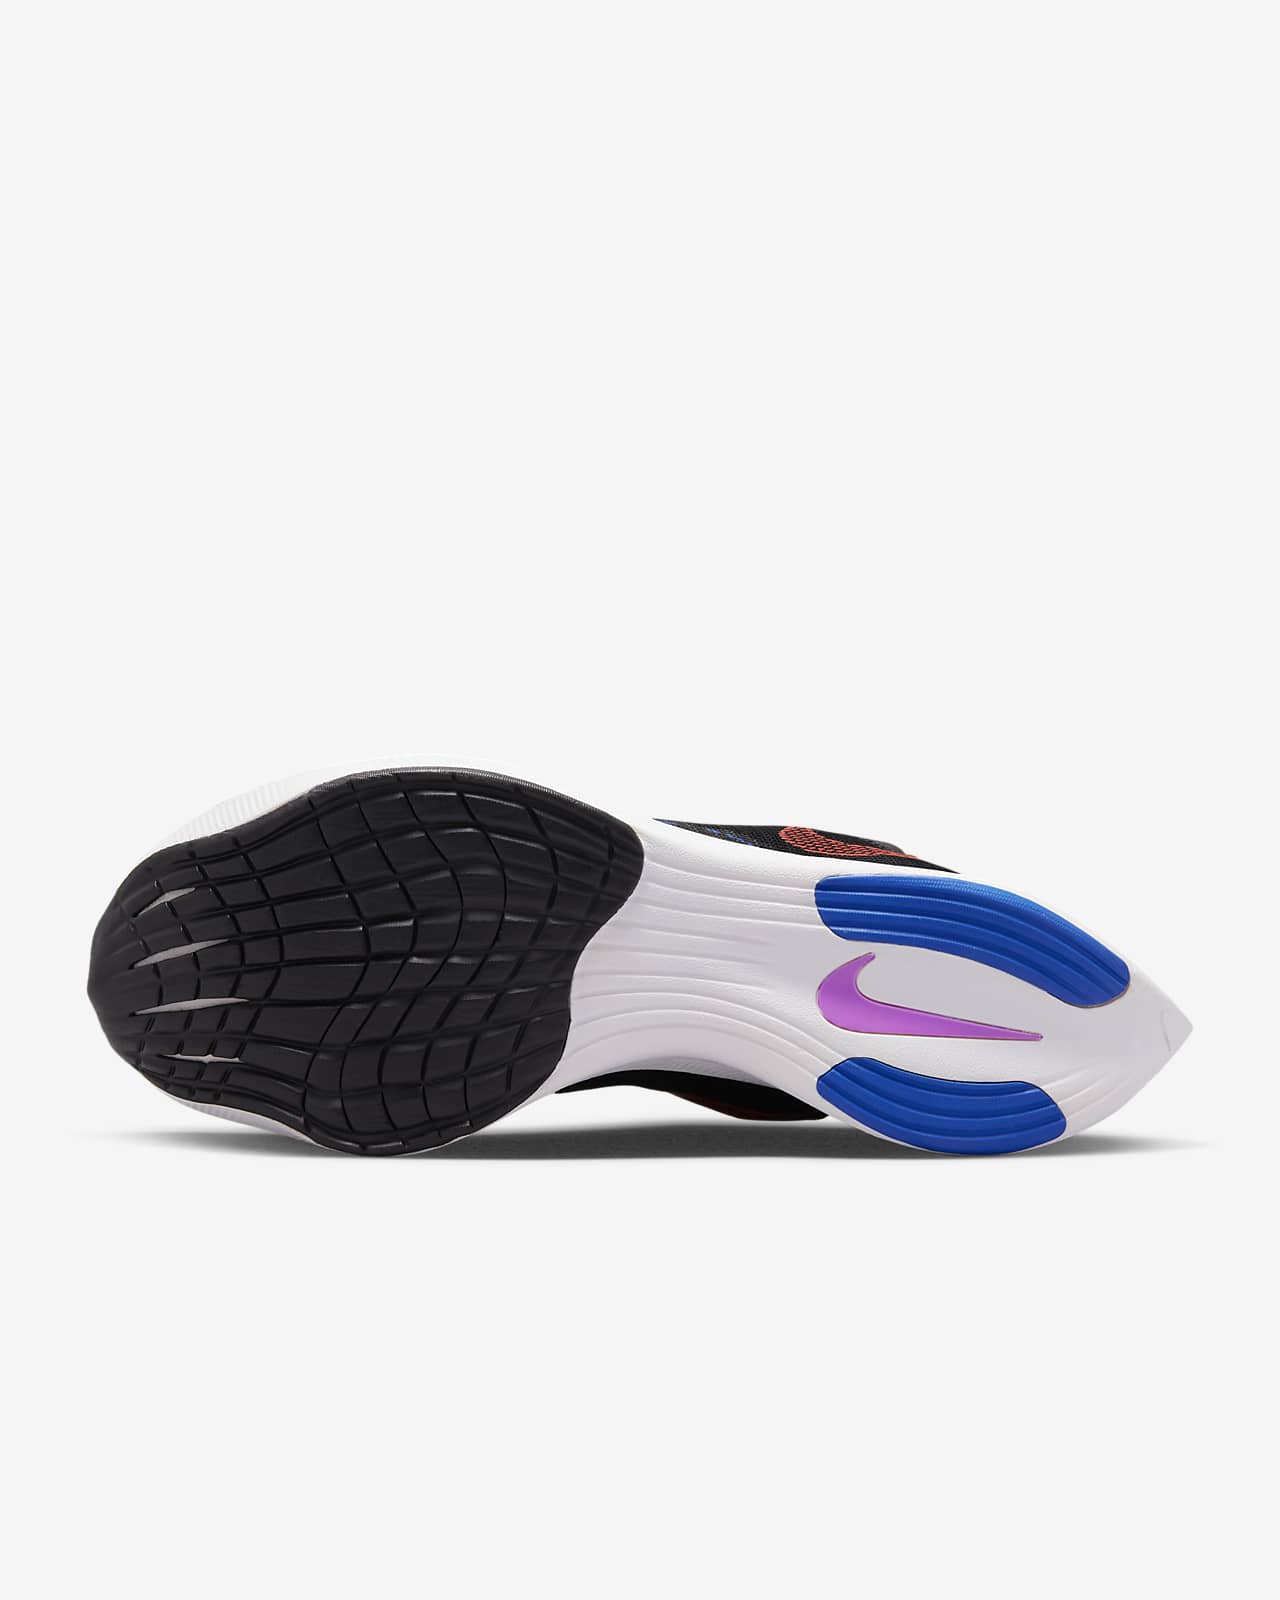 Rey Lear Rey Lear desconcertado Nike Vaporfly 2 Zapatillas de competición para asfalto - Mujer. Nike ES